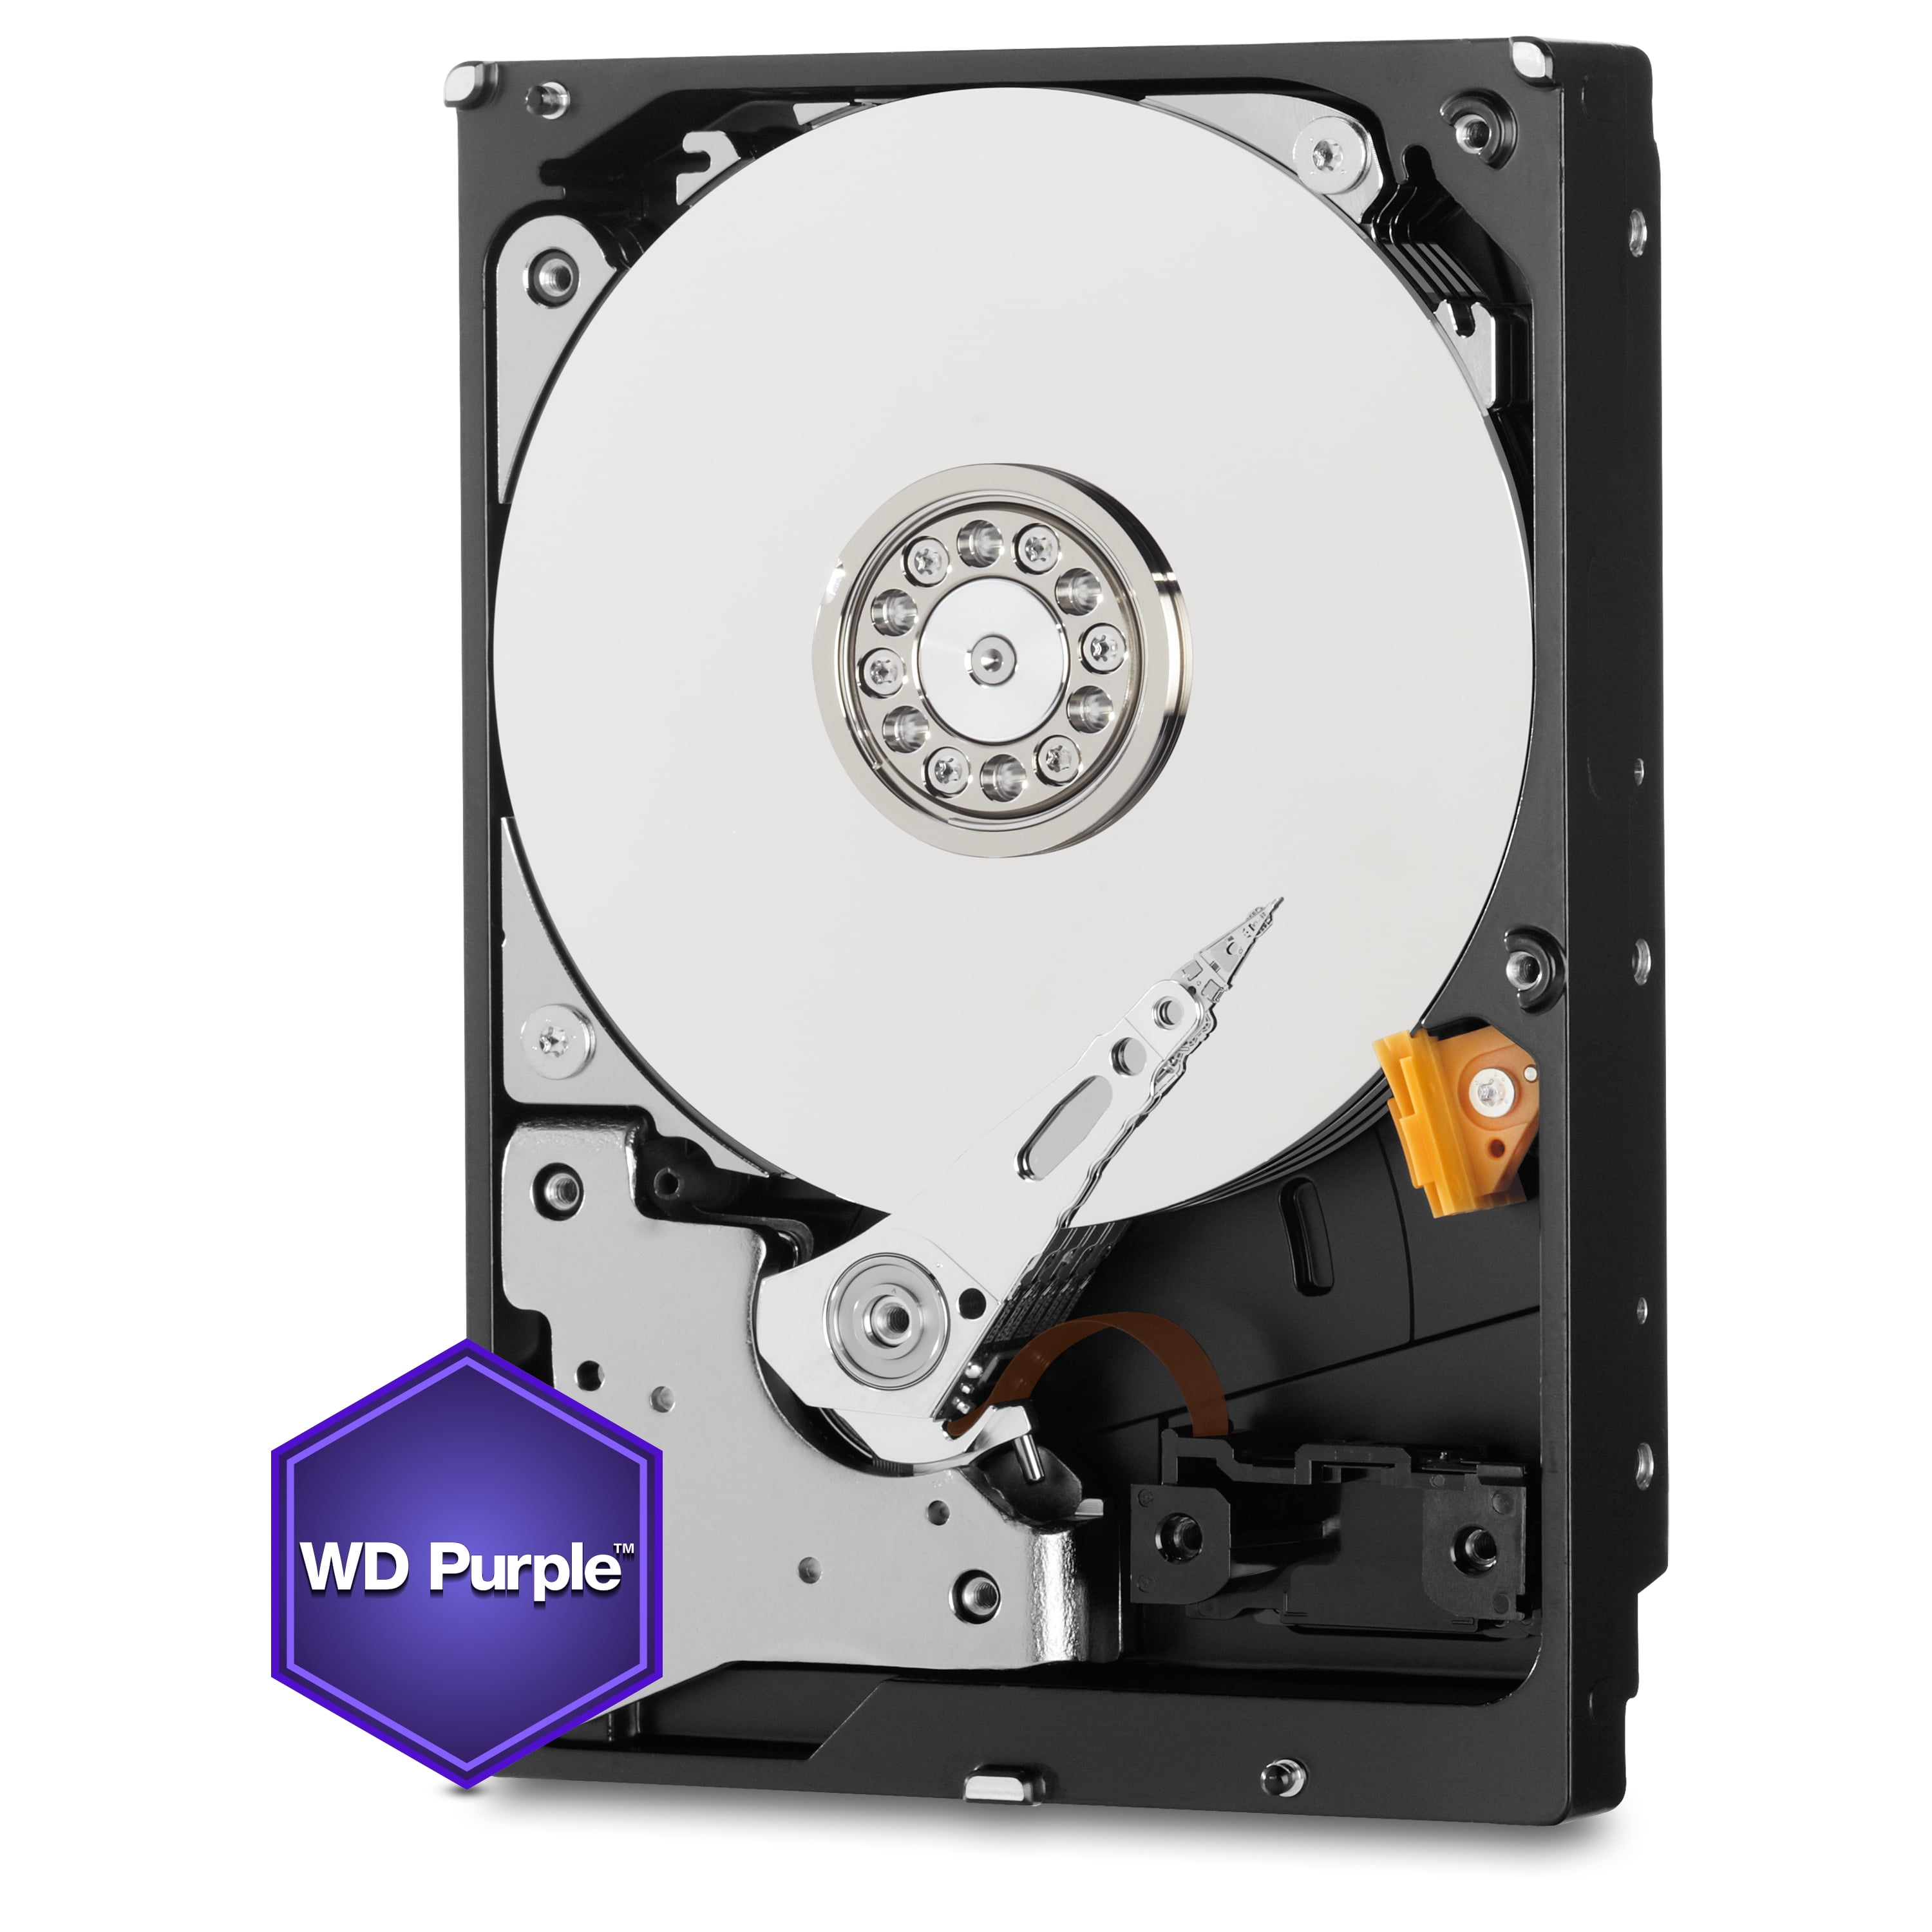 WD Purple 2TB Surveillance Hard Disk Drive 5400 RPM Class SATA 6 Gb/s 64MB Cache 3.5 Inch - WD20PURZ - Walmart.com